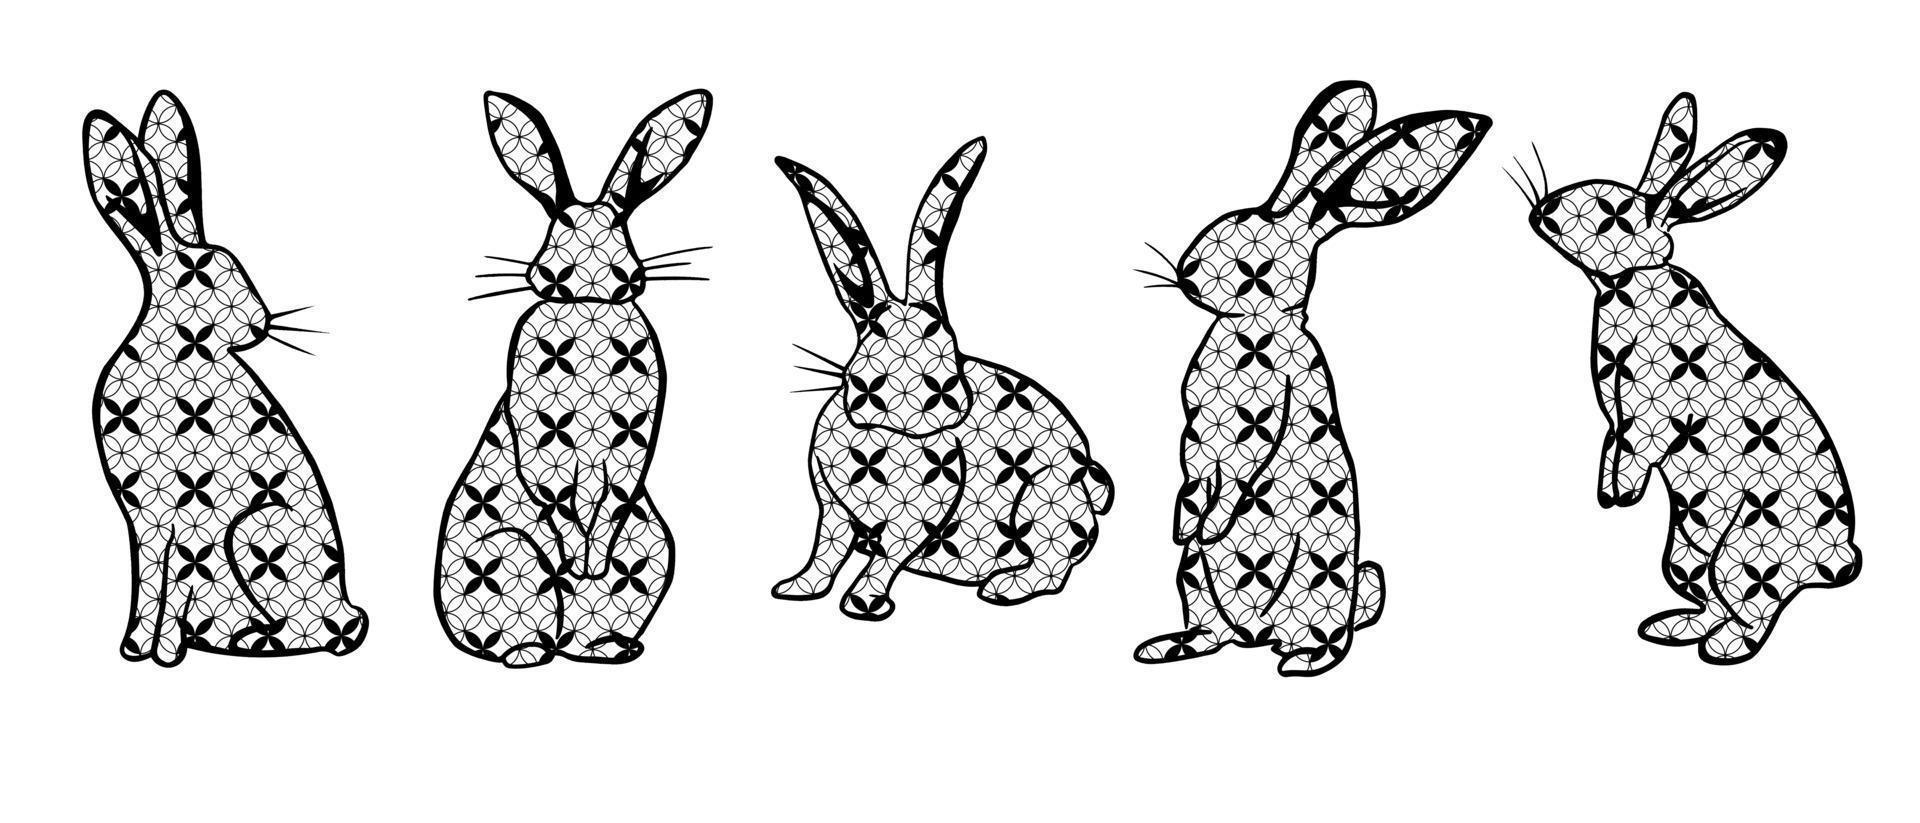 conjunto de símbolo do zodíaco chinês tradicional - coelho preto sobre fundo branco com ornamentos geométricos. vetor